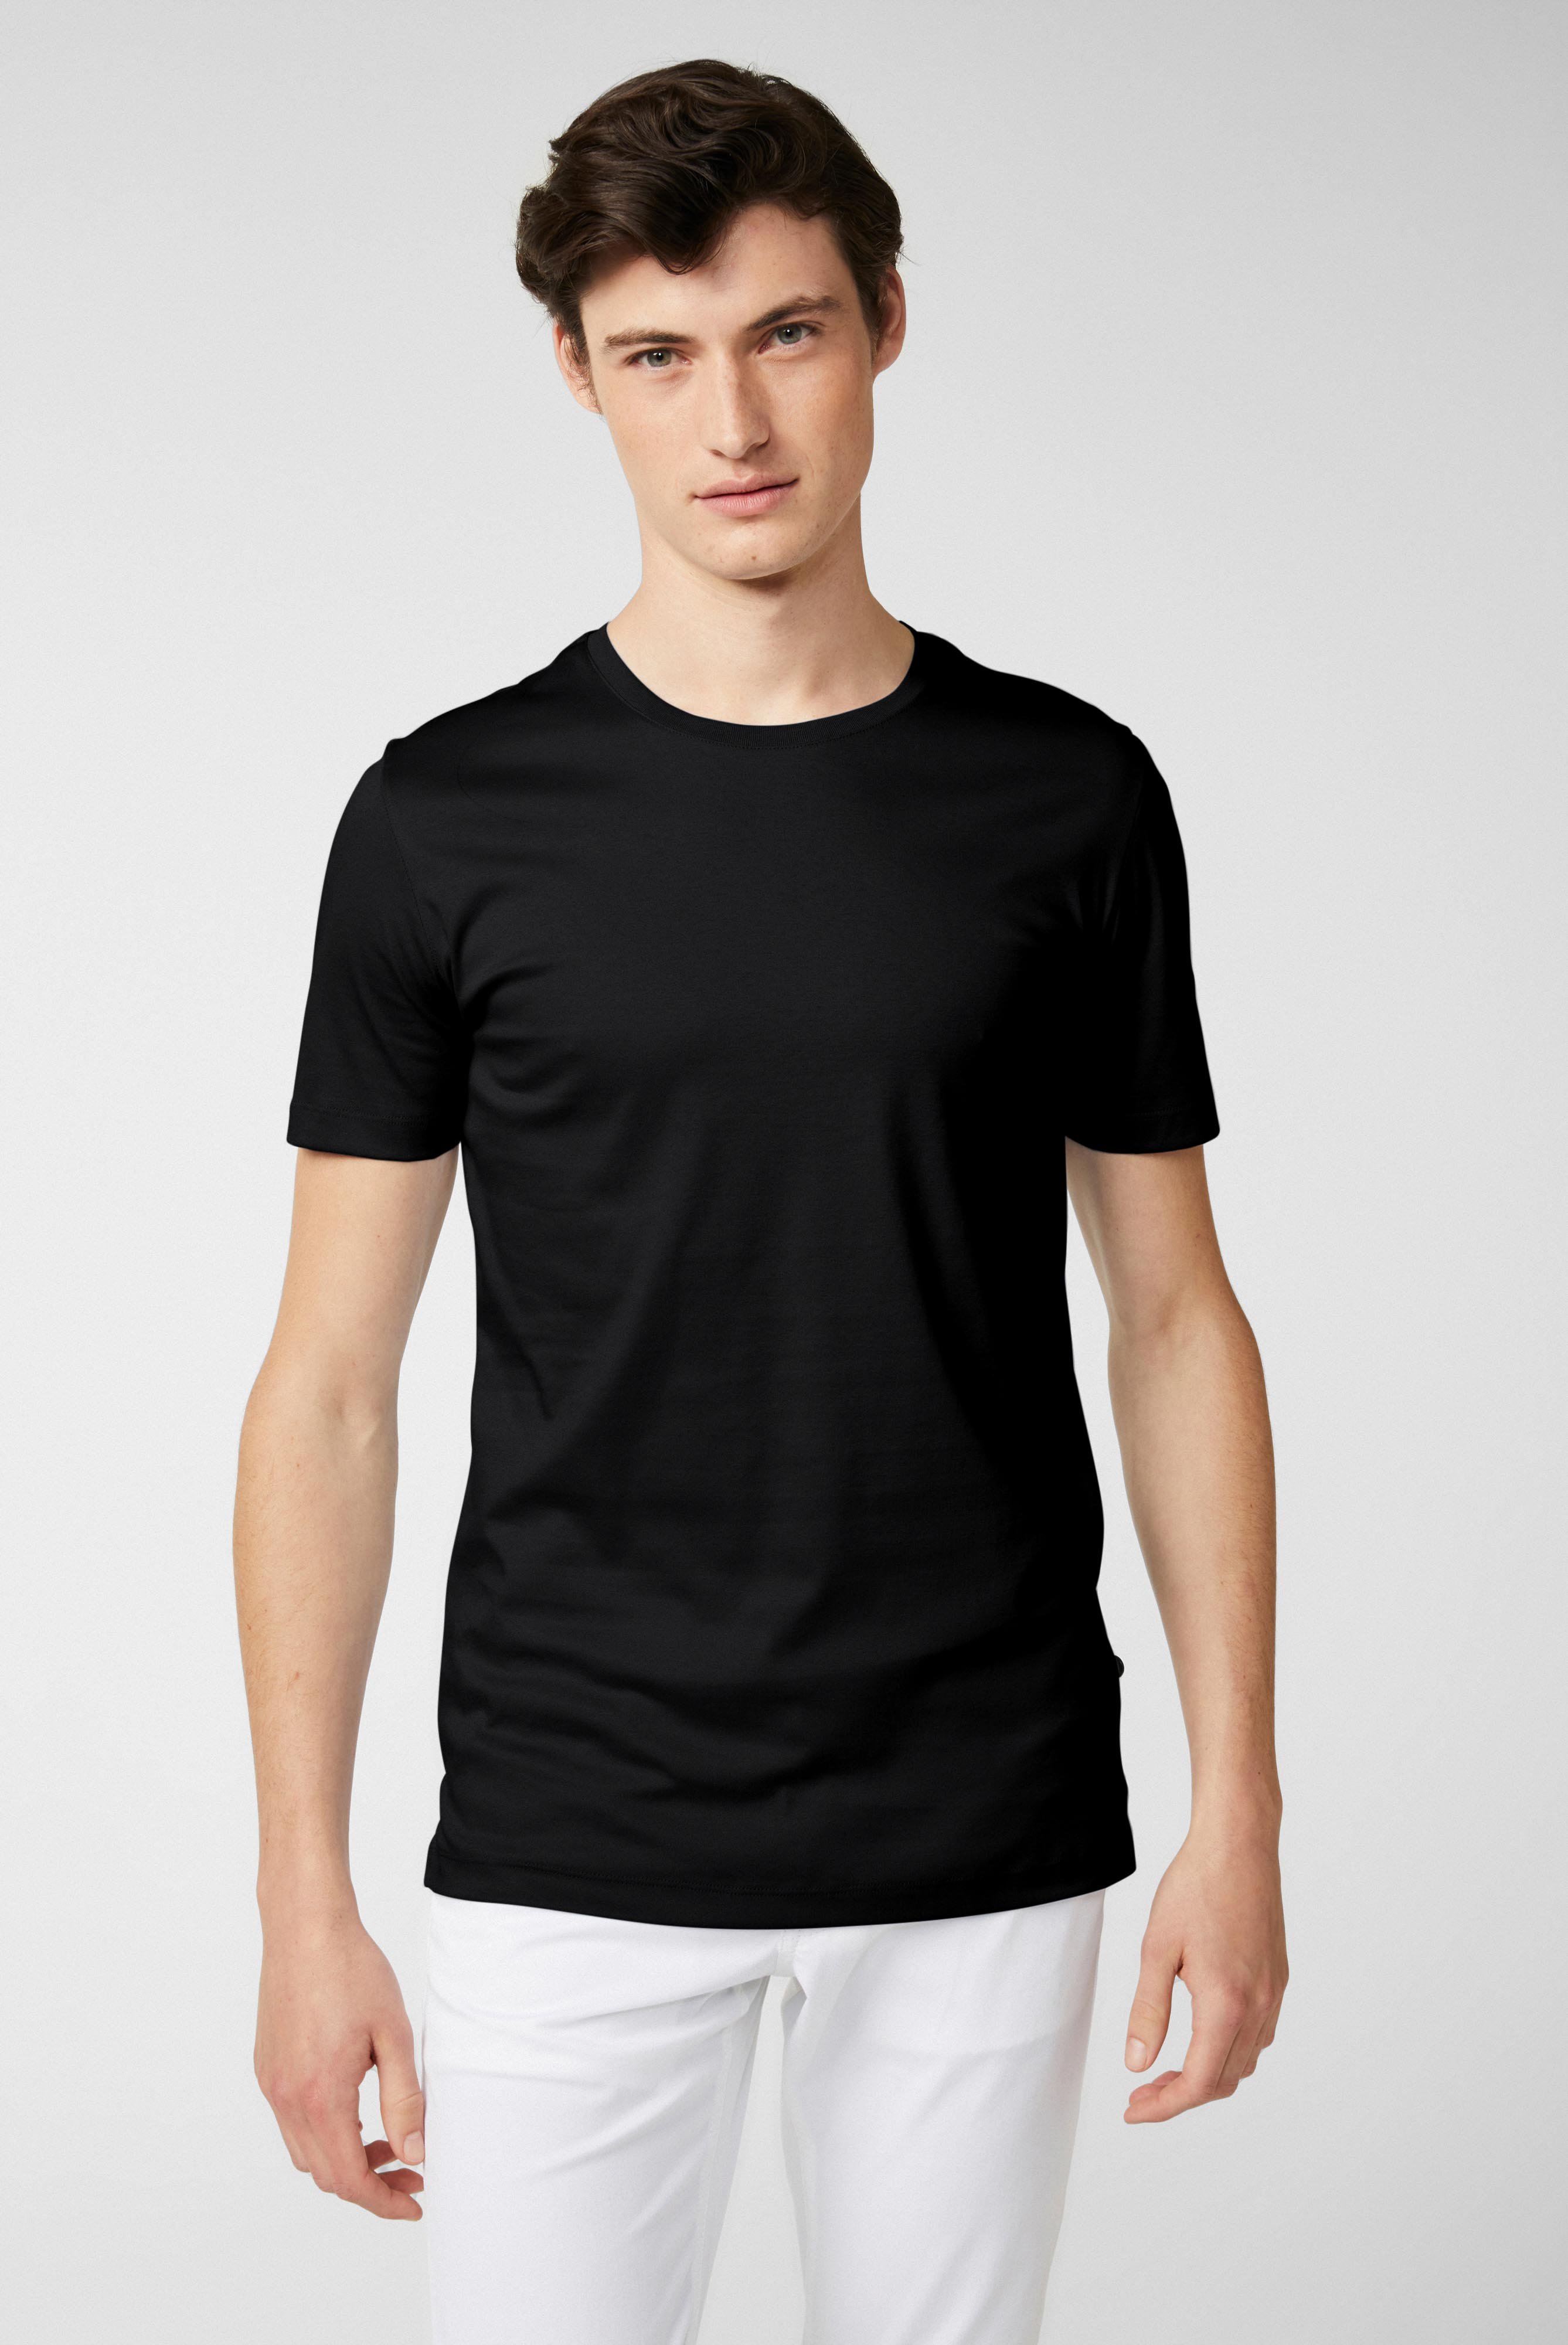 Rundhals Jersey T-Shirt Slim Fit